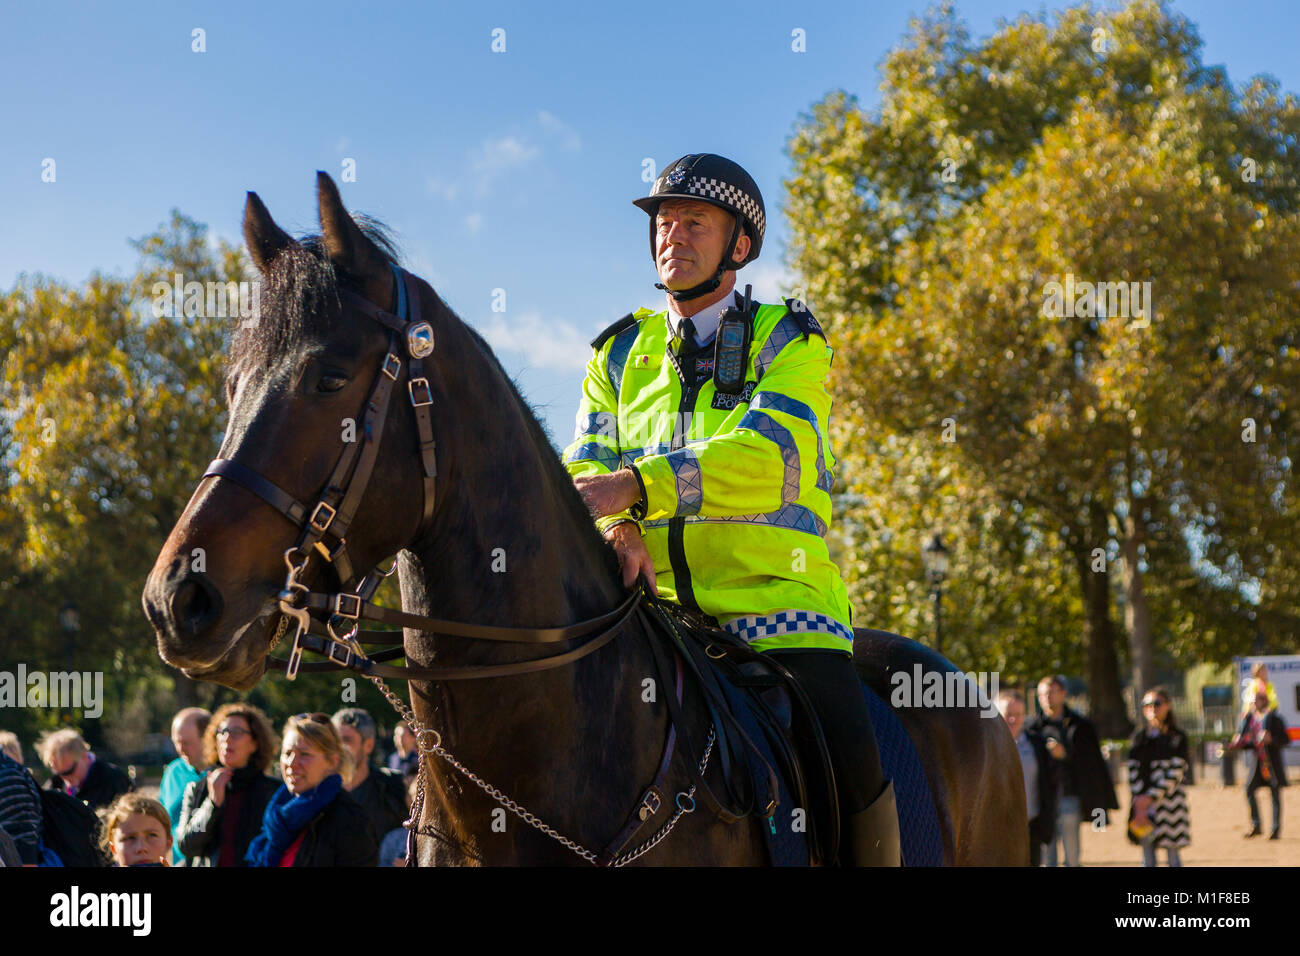 Ein Polizist auf dem Pferderücken wacht über eine kleine Schar von Menschen, wie sie die Wachablösung an der Horse Guards Parade, London ansehen. Stockfoto